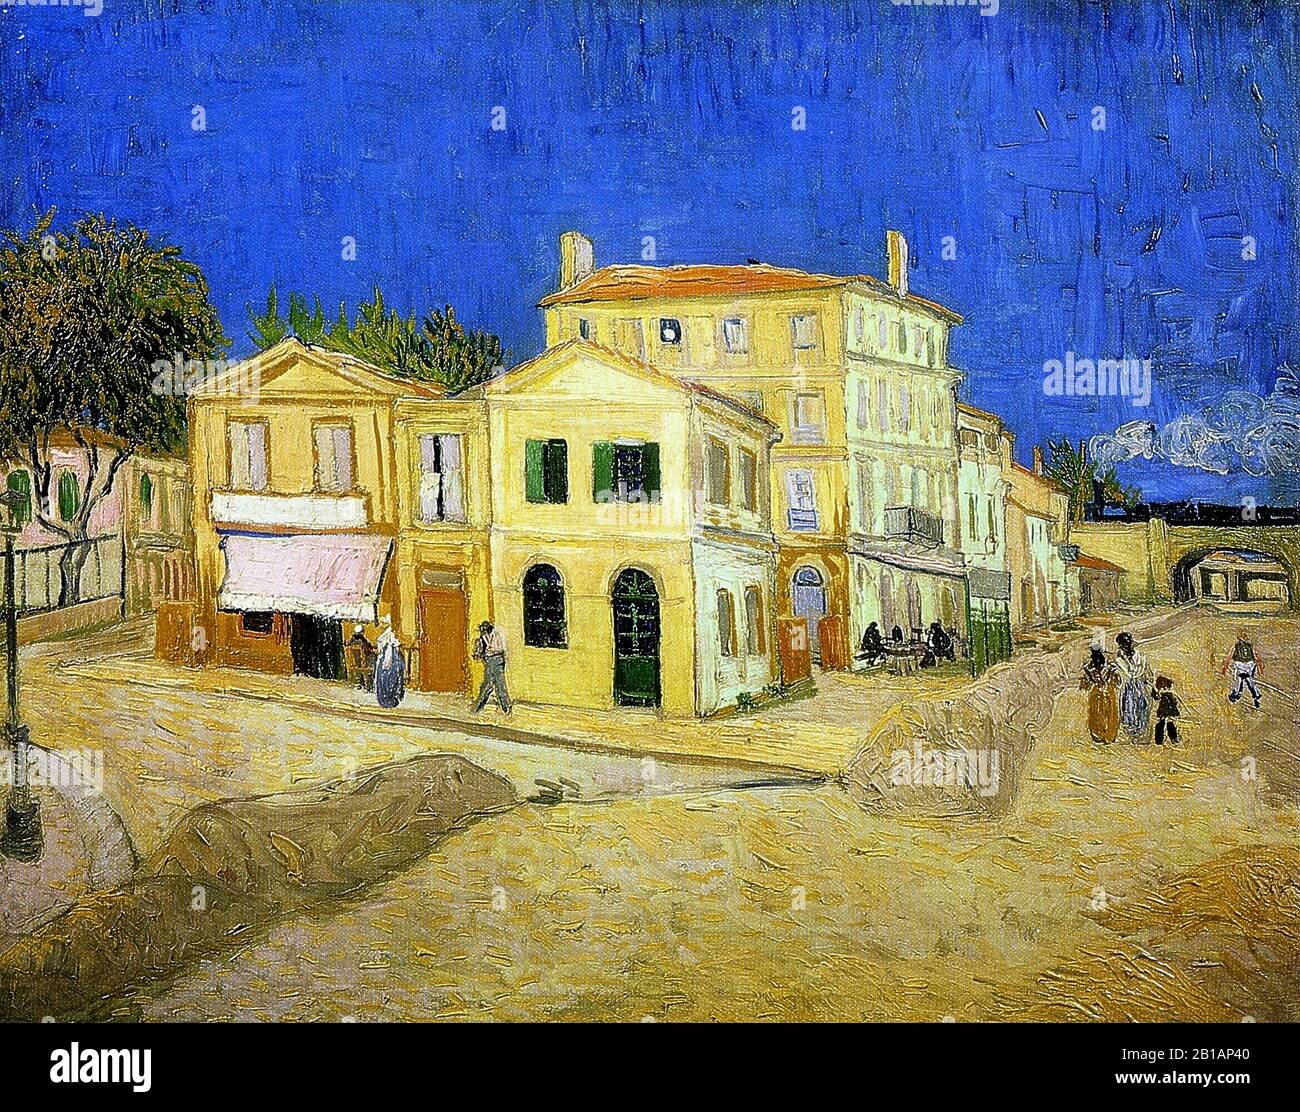 La Casa gialla, o la casa di Vincent ad Arles (la Maison jaune) 1888 -  dipinto di Vincent van Gogh - Immagine Ad Altissima risoluzione e qualità  Foto stock - Alamy